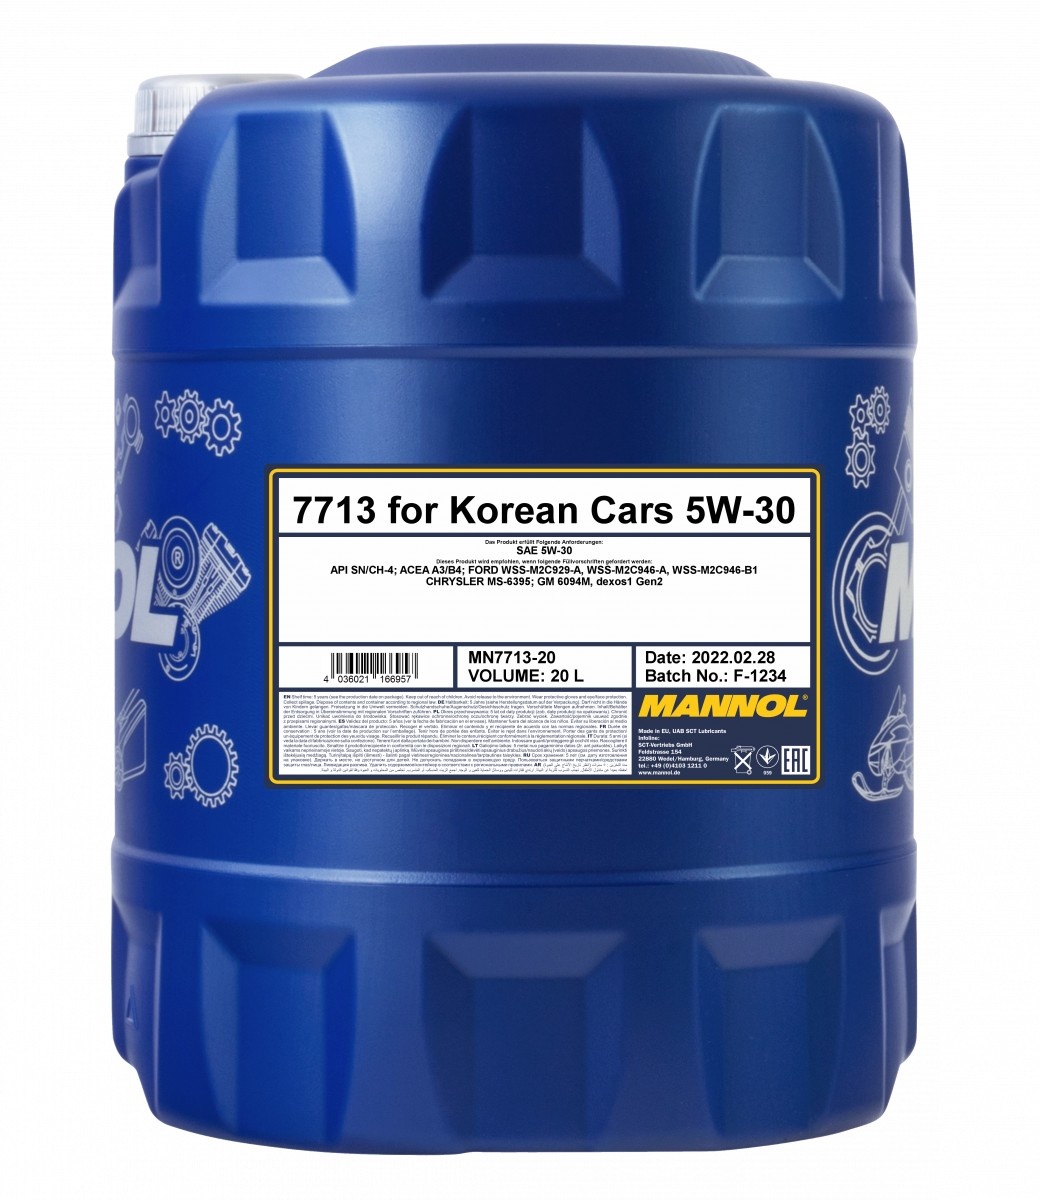 Моторное масло Mannol for Korean Cars 5W-30 7713 20L